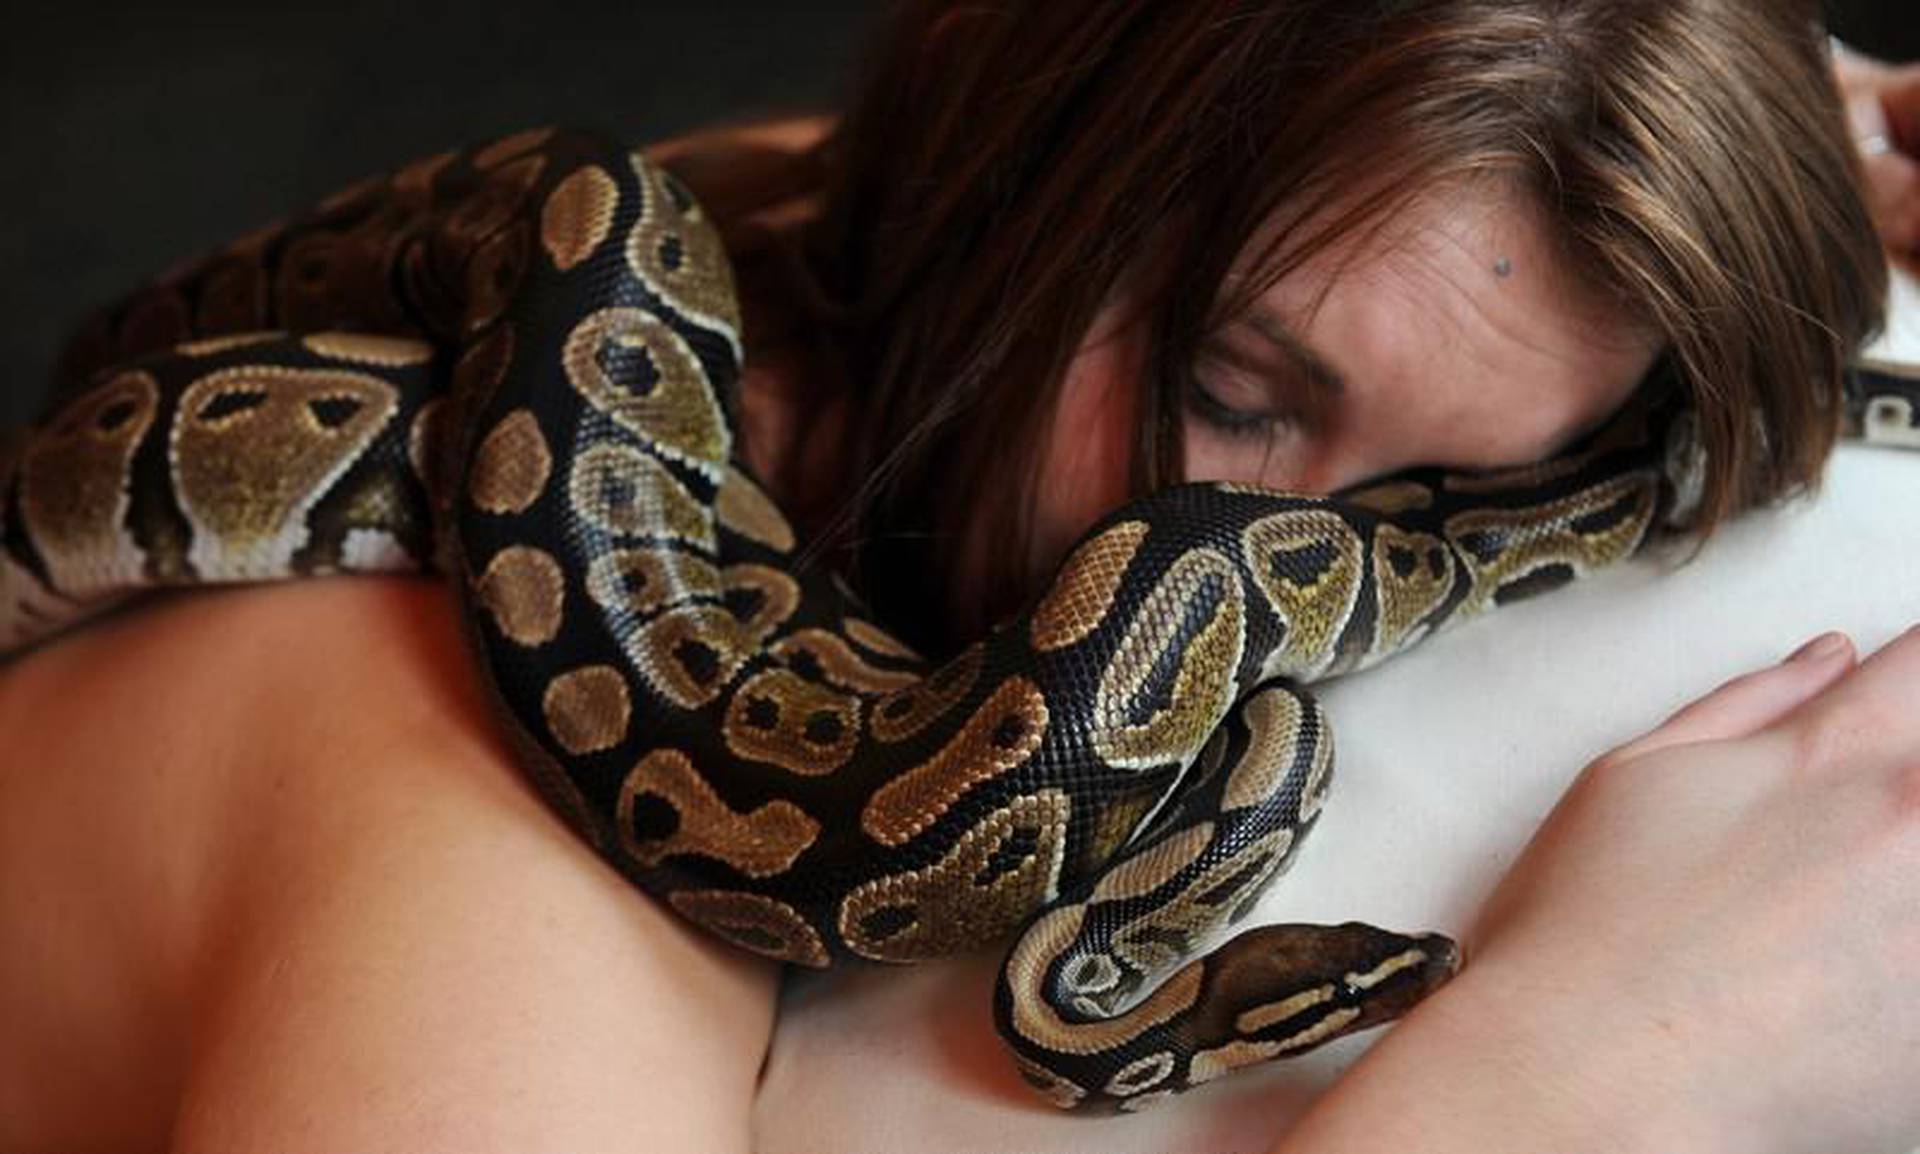 Женщина змея видео. Анаконда питон и женщина. Фотосессия со змеями. Девушка змея. Девушка с удавом.